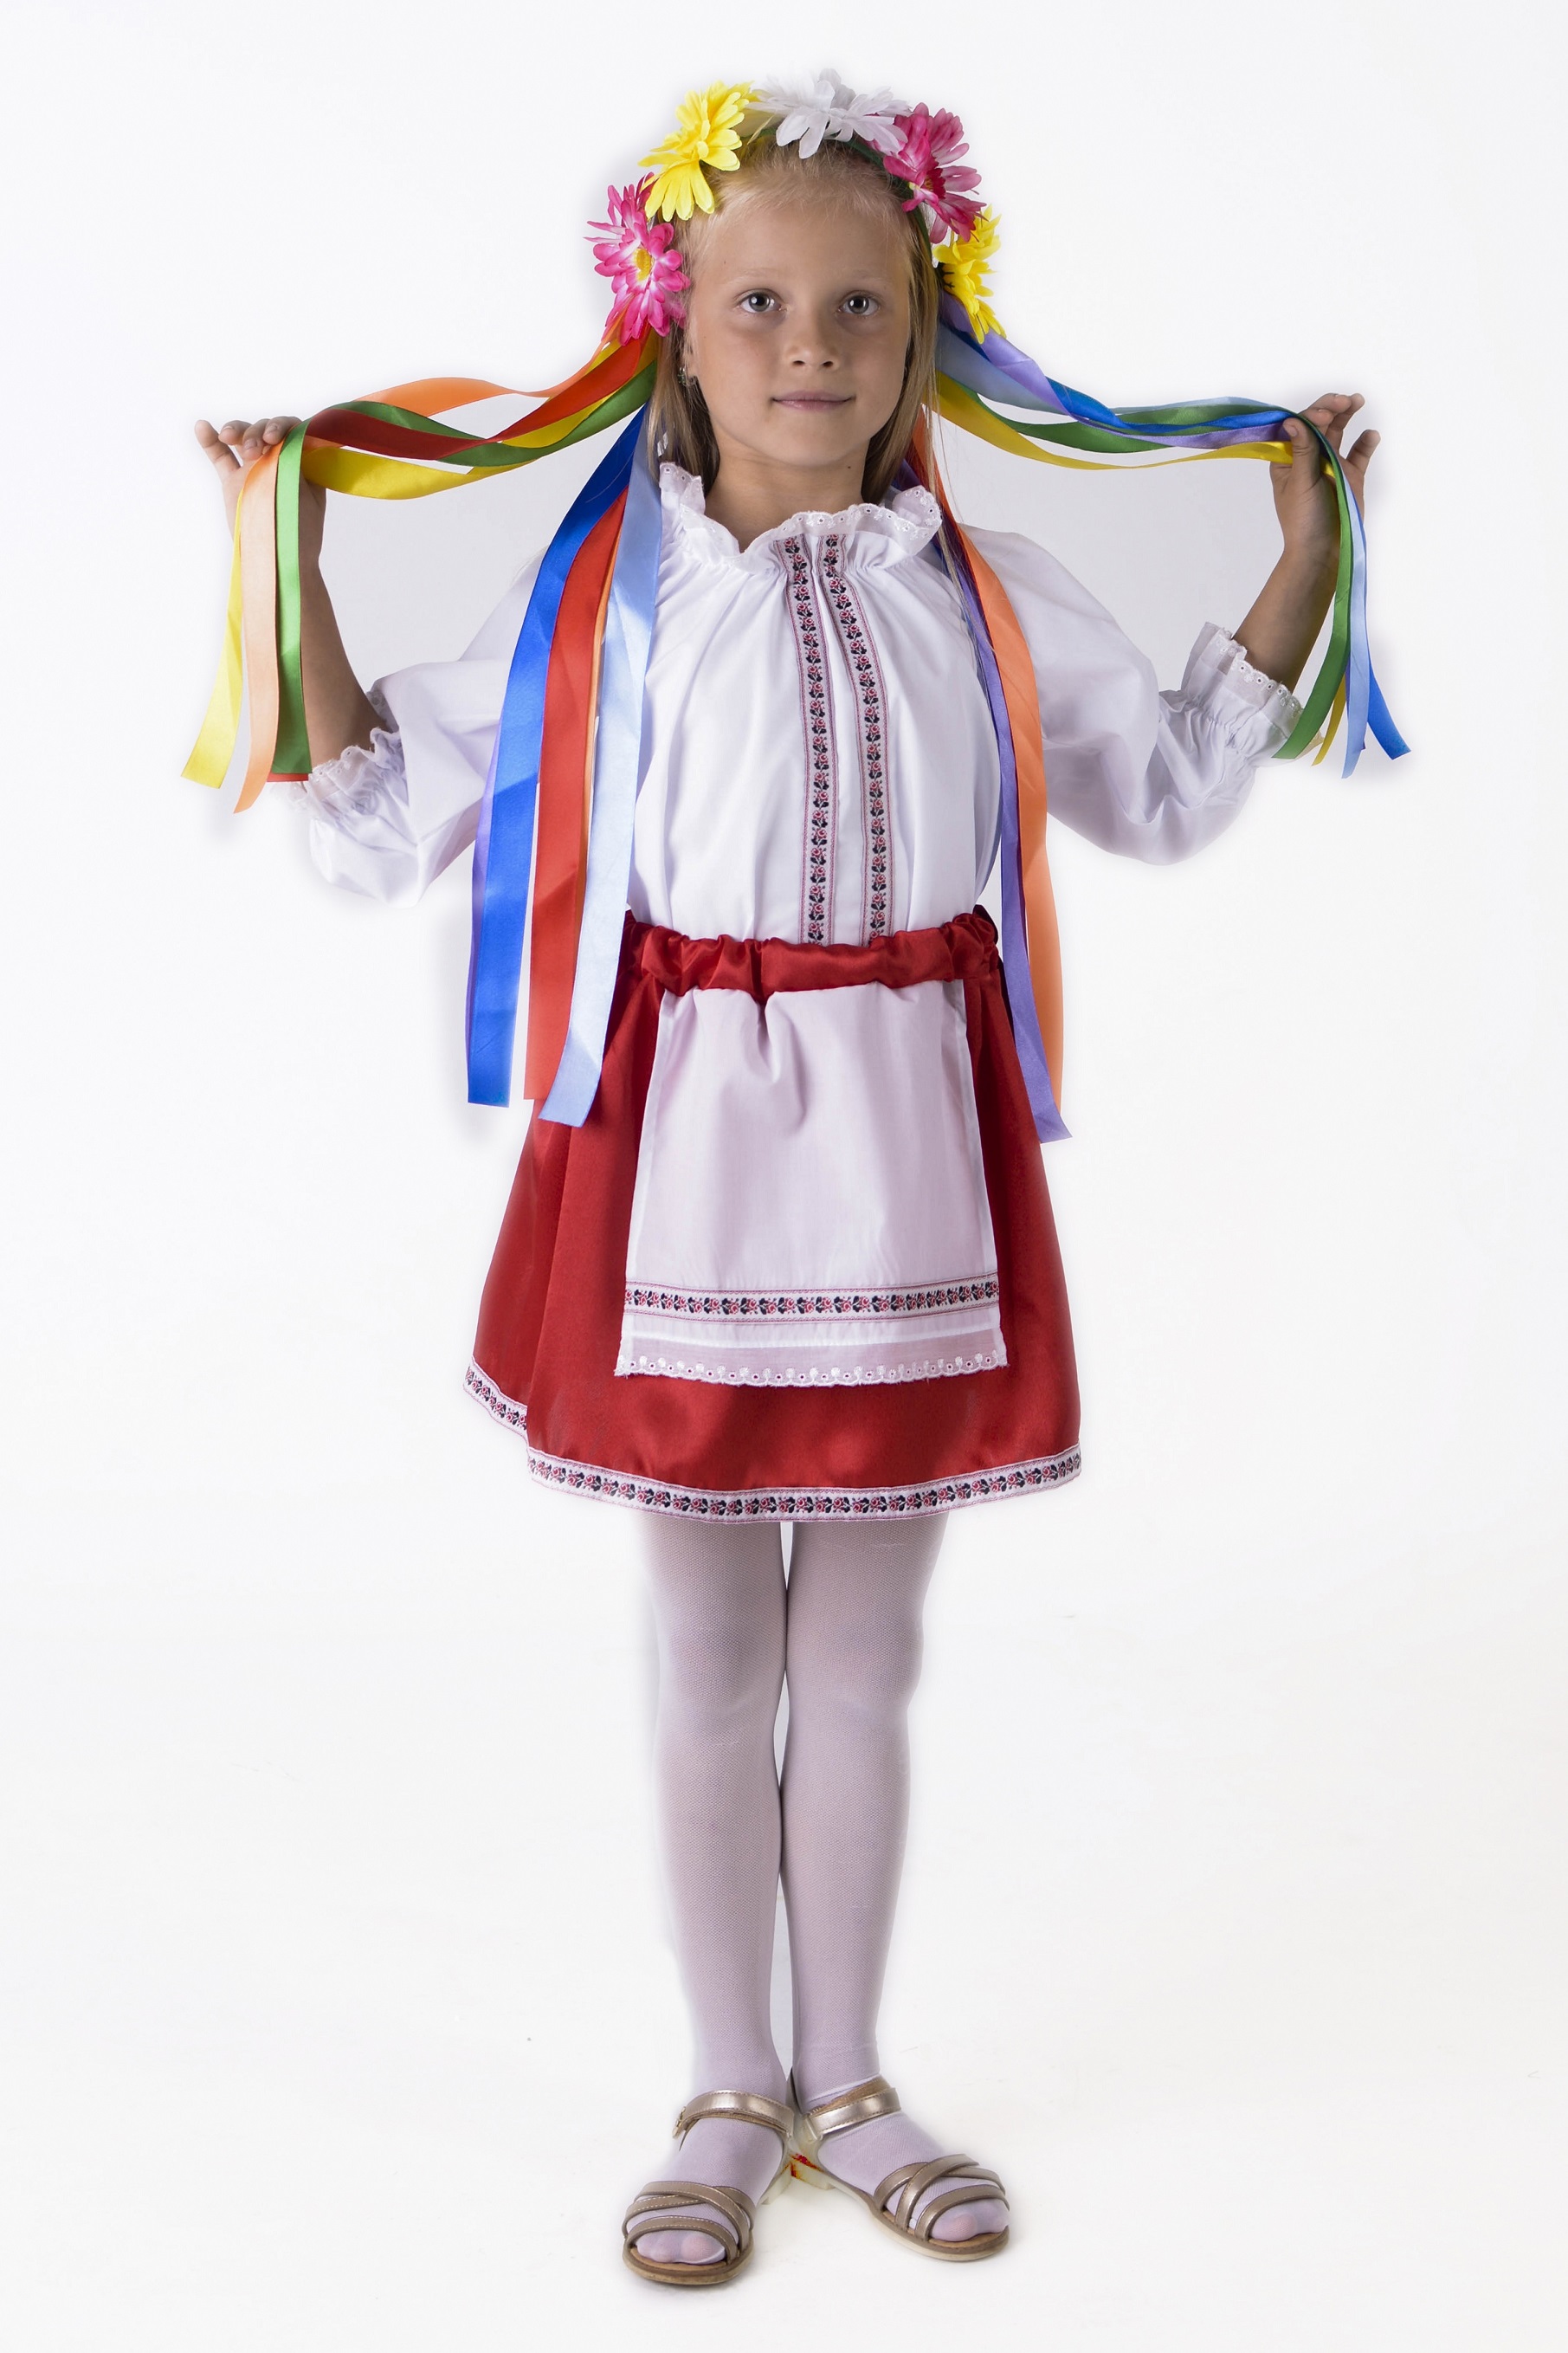 Детский трикотаж оптом и в розницу от производителя Украина (Комсомольск)